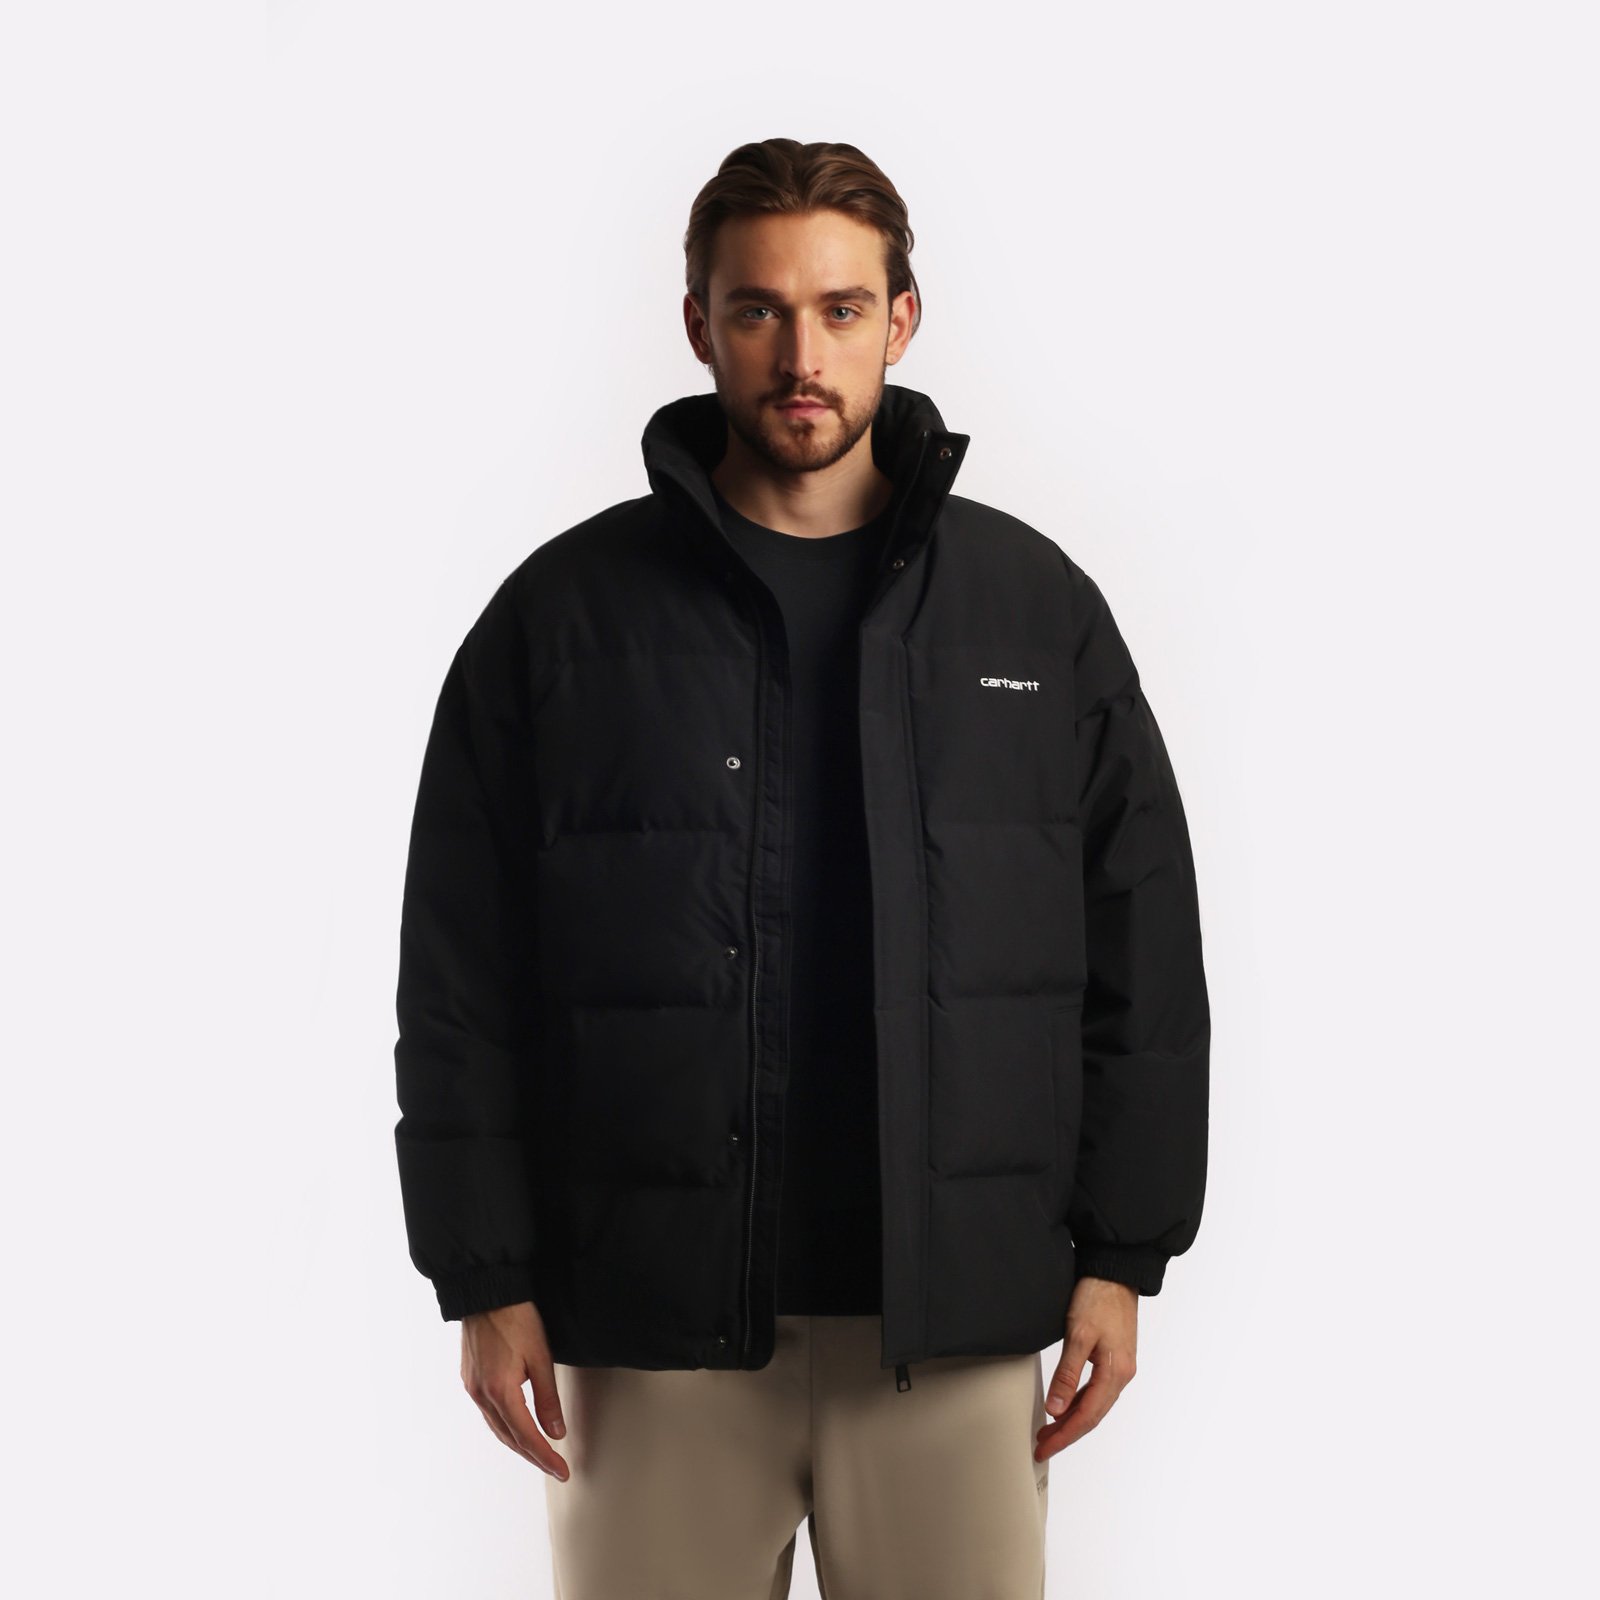 мужская куртка Carhartt WIP Danville Jacket  (I029450-black/wht)  - цена, описание, фото 2